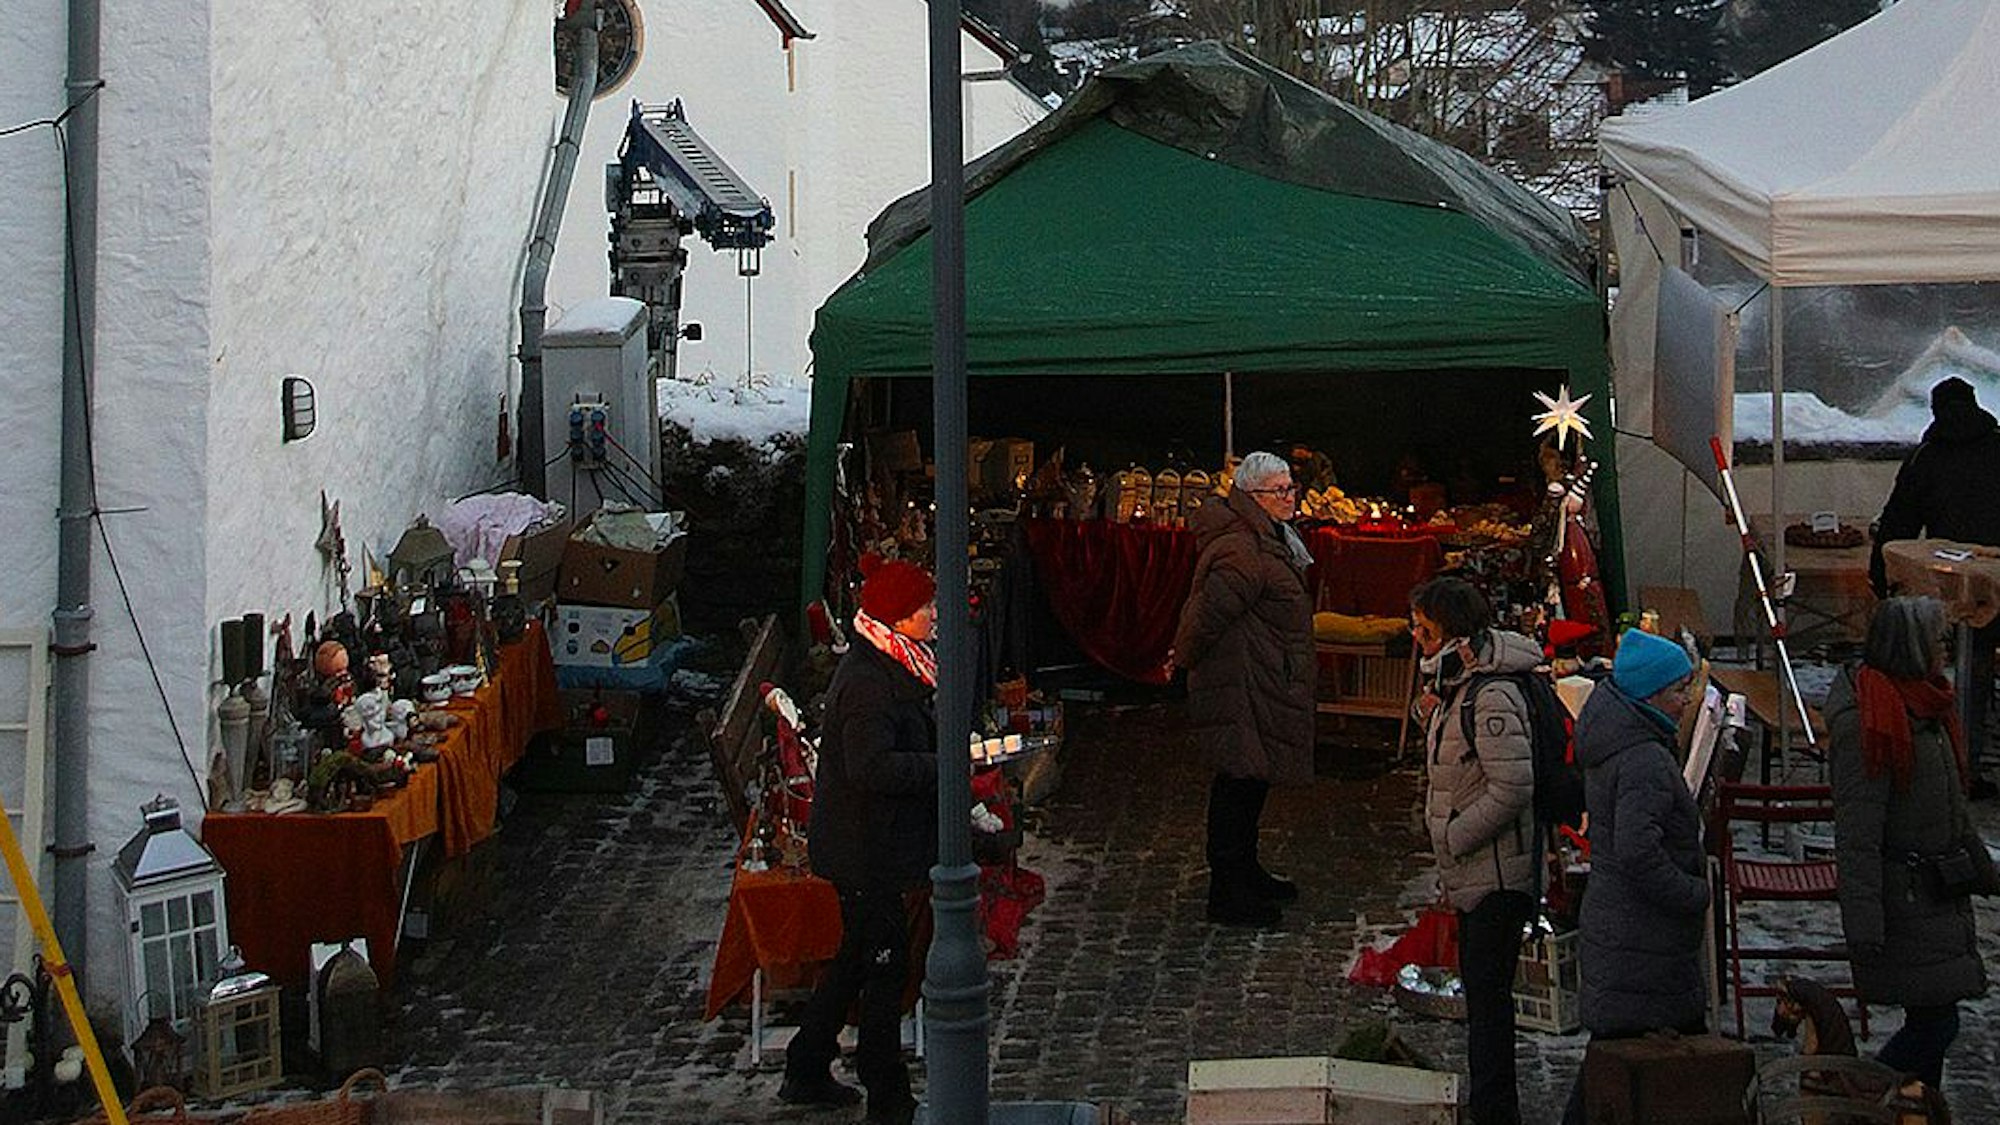 Das Bild zeigt im Vordergrund einen Teil es Weihnachtsmarkts, im Hintergrund ist die verschneite Landschaft zu sehen.